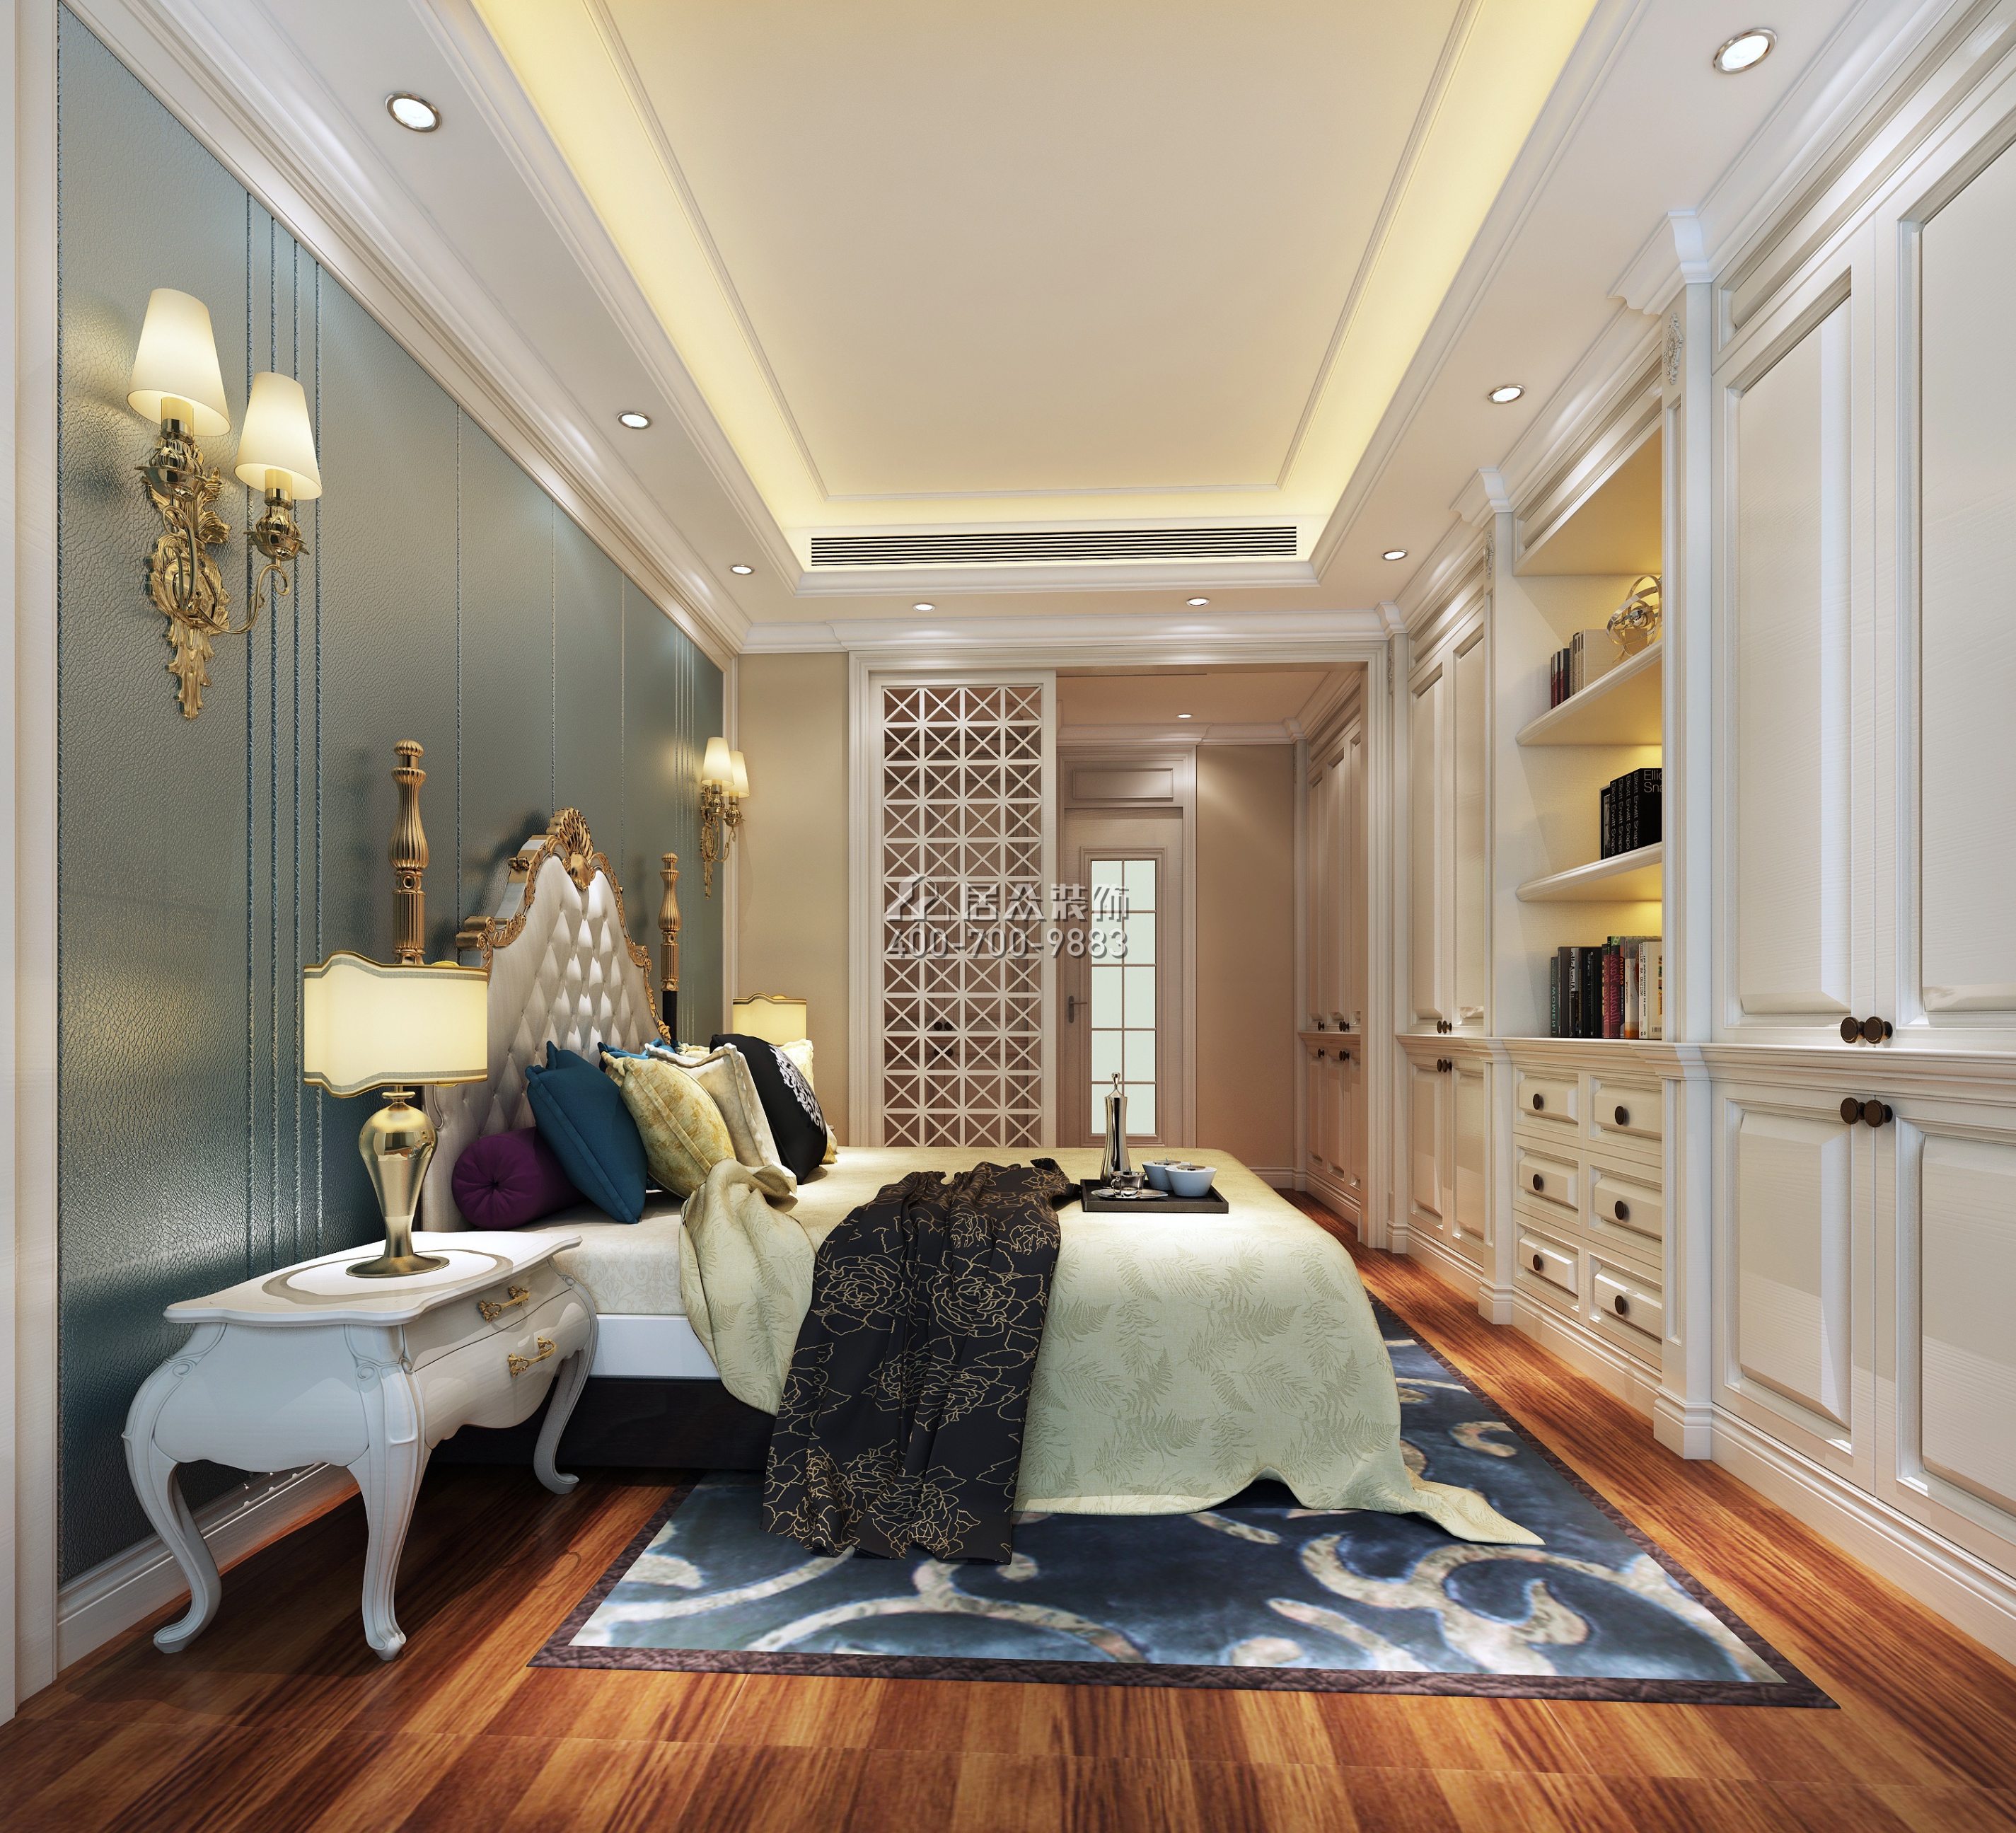 寶生midtown 156平方米歐式風格平層戶型臥室裝修效果圖